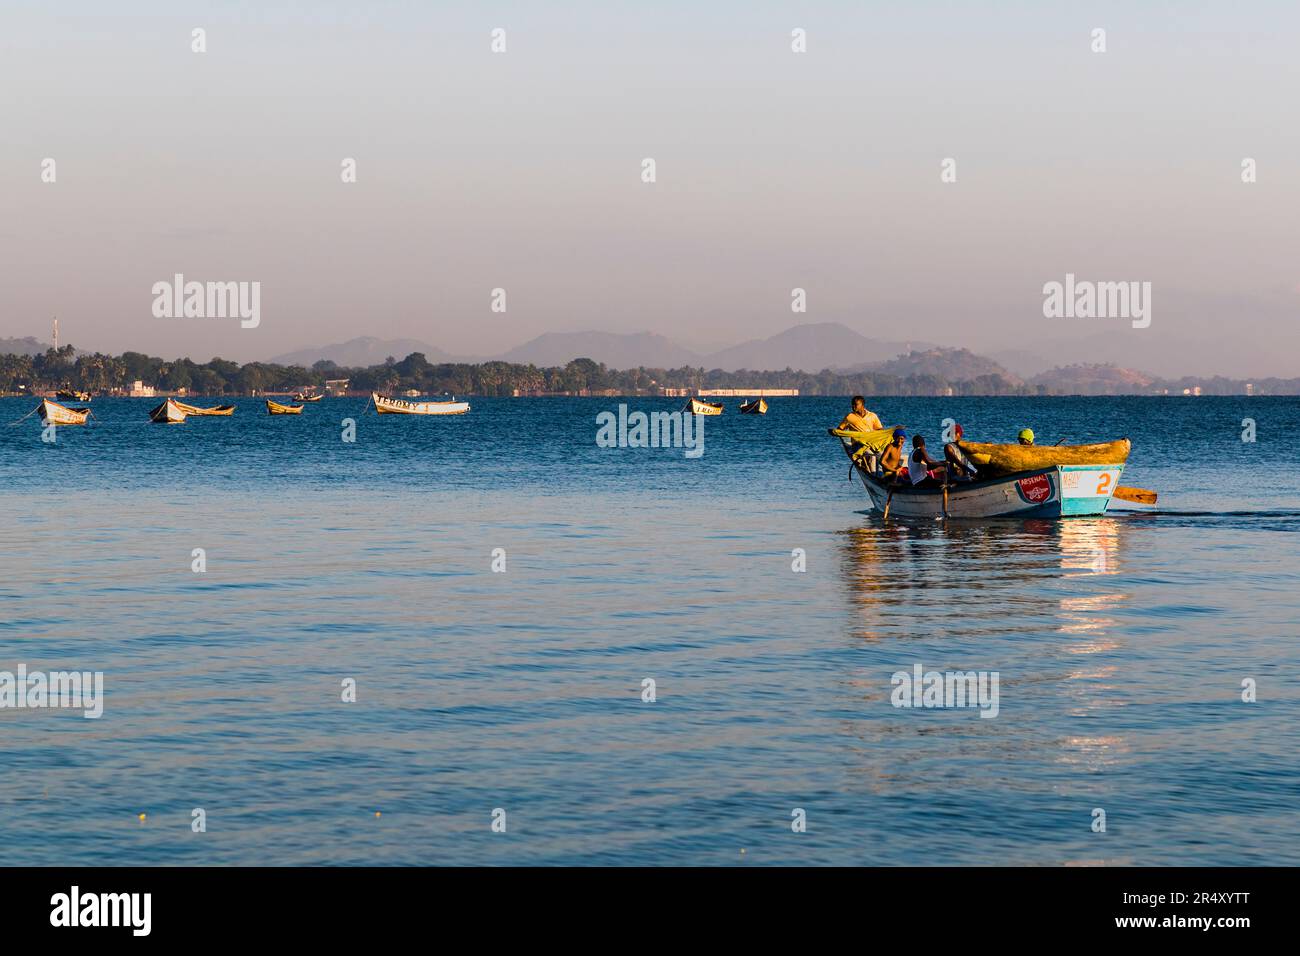 Lago Malawi, uomini in viaggio verso un piccolo porto di pescatori vicino a Makawa. La barca a remi porta anche una canoa da sgambino per la pesca tradizionale Foto Stock